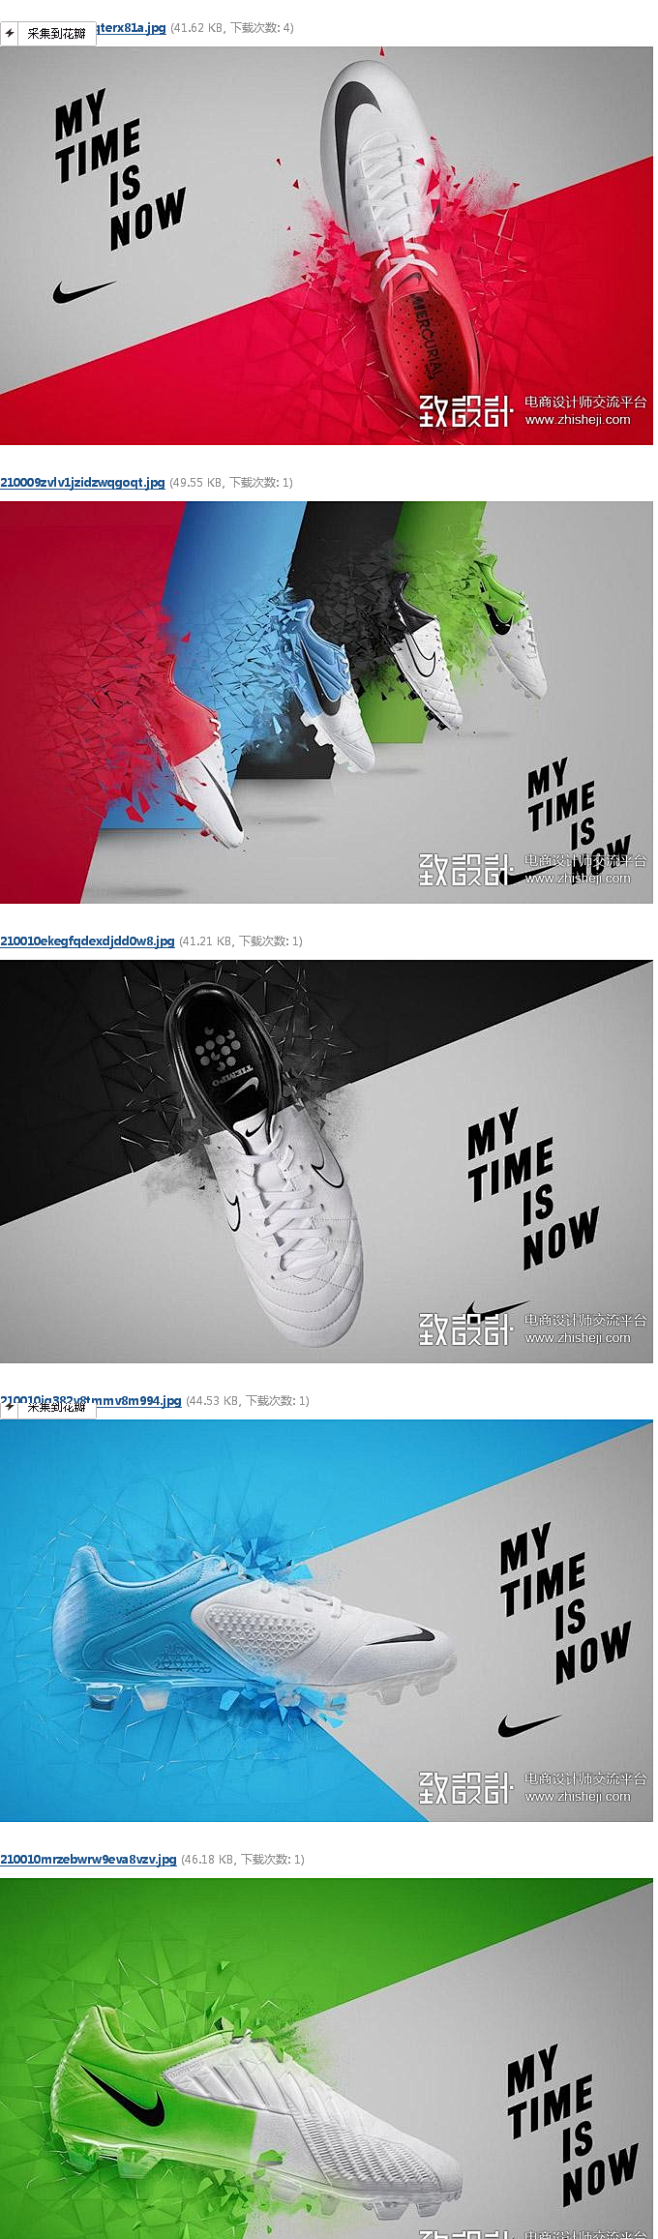 耐克的鞋子广告拿来大家参考,原创作品